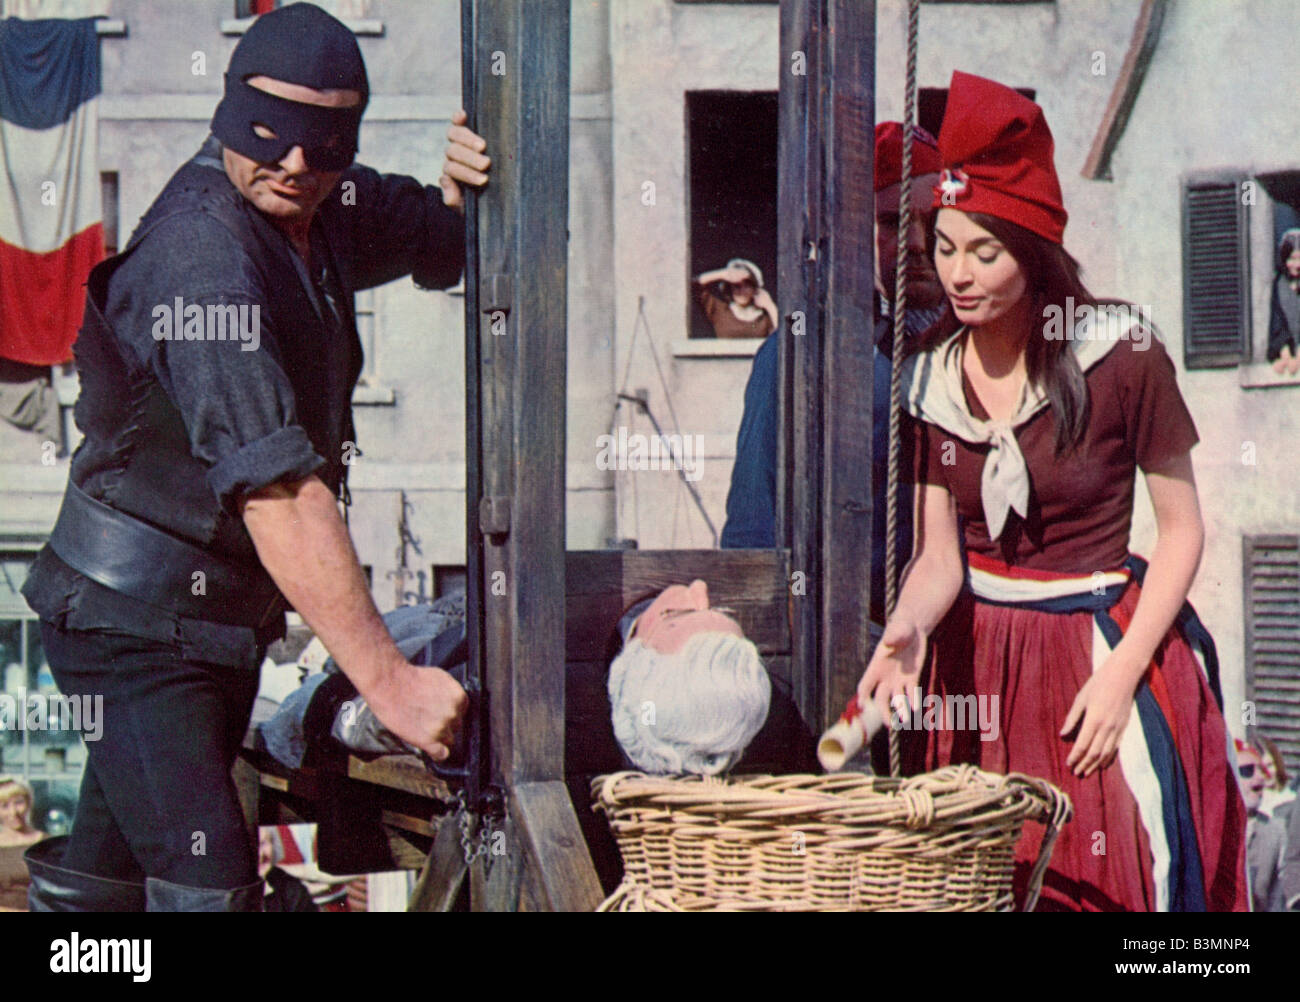 Portare su - NON PERDERE LA TESTA 1966 Rank film Foto Stock